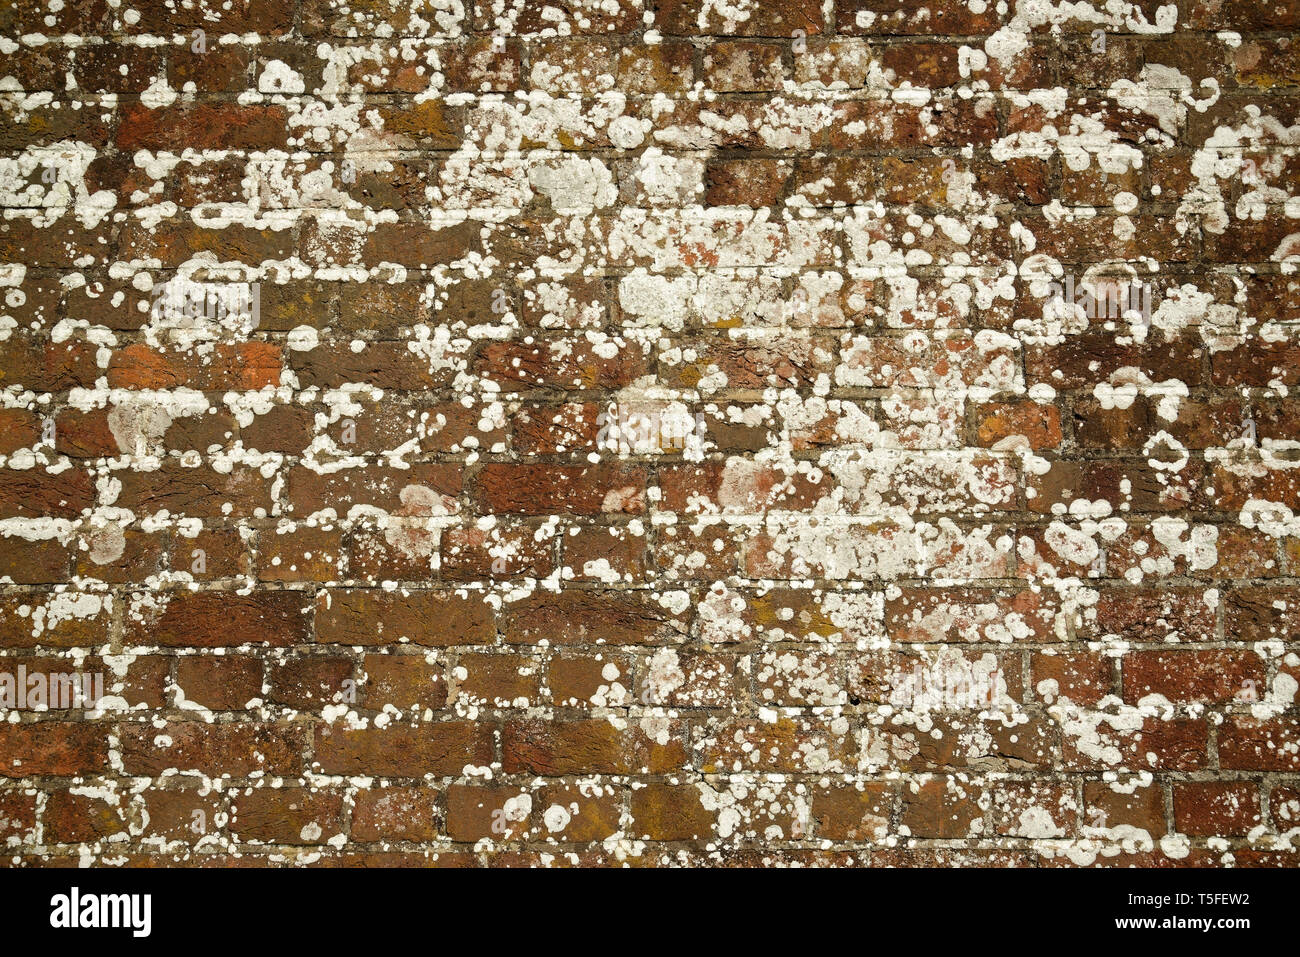 Bellissimo rosso vecchio muro di mattoni con un lichene e invecchiato di qualità. Foto Stock